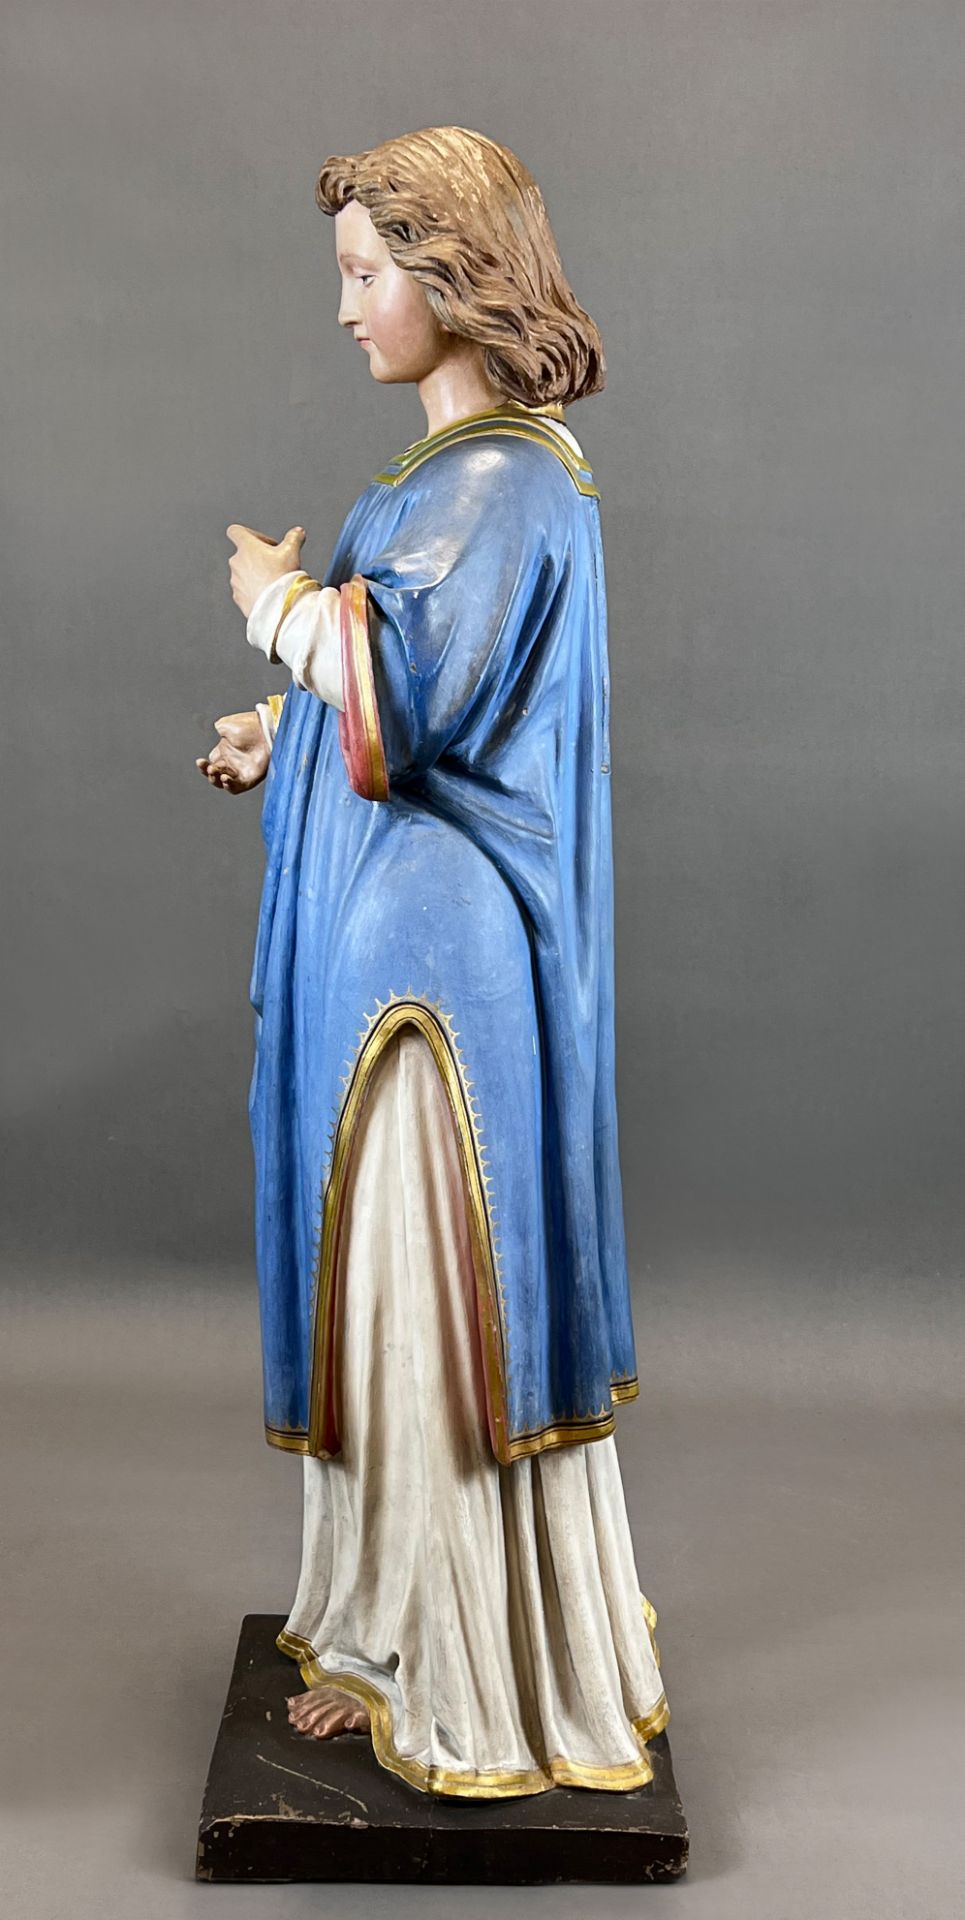 Heiligenfigur. Nazarener. Um 1900. Wohl Italien. - Bild 2 aus 14